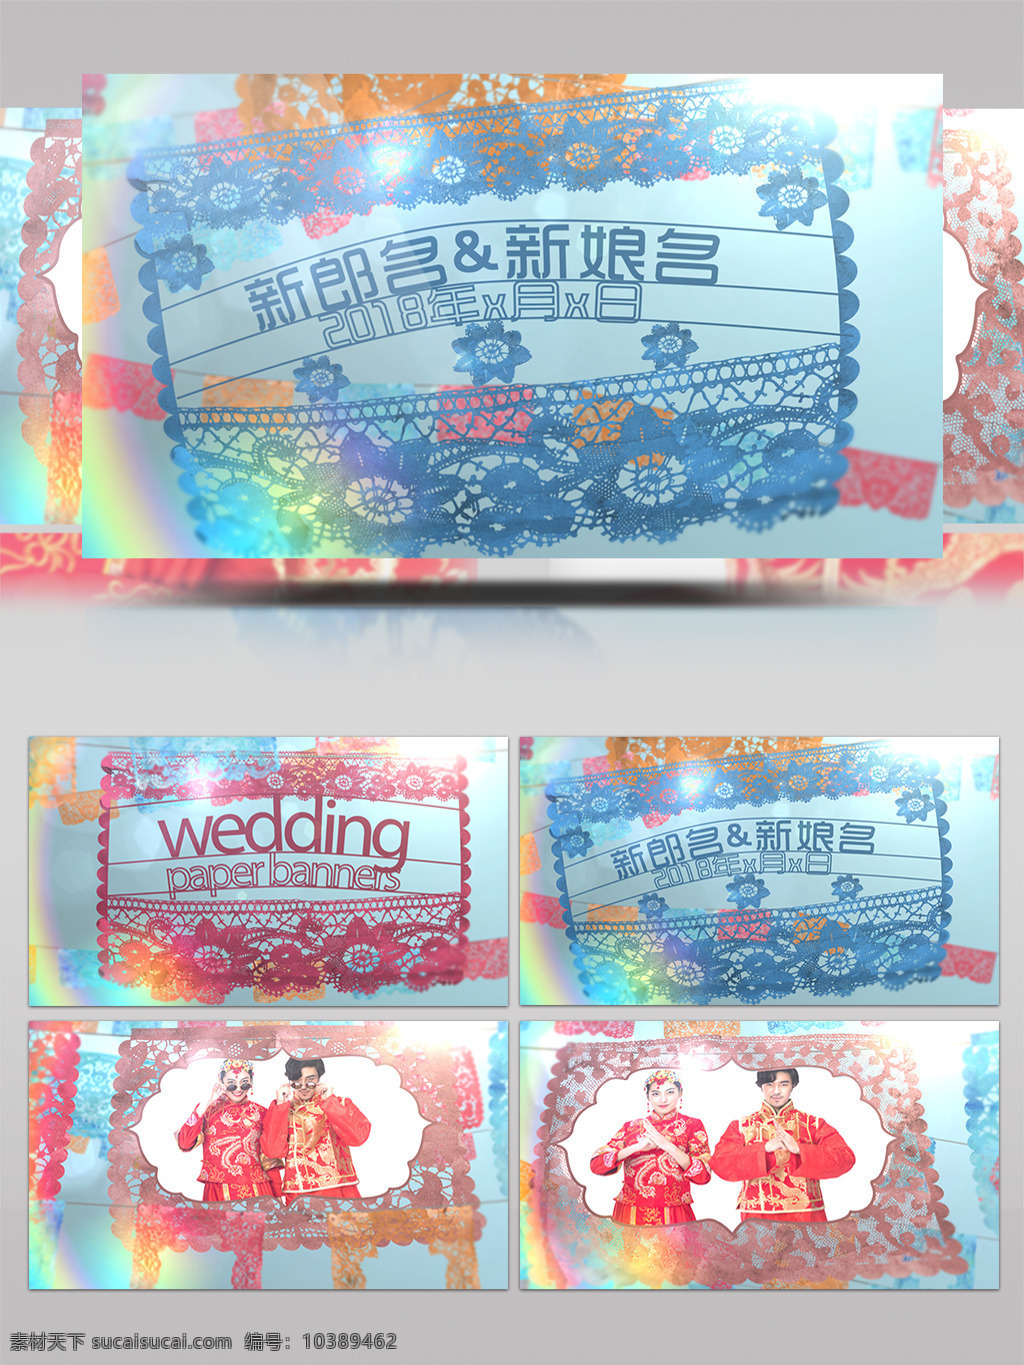 中国 风 剪纸 风格 婚礼 片头 ae 模板 结婚 婚庆 喜庆 开场 暖场 晚会 中国风